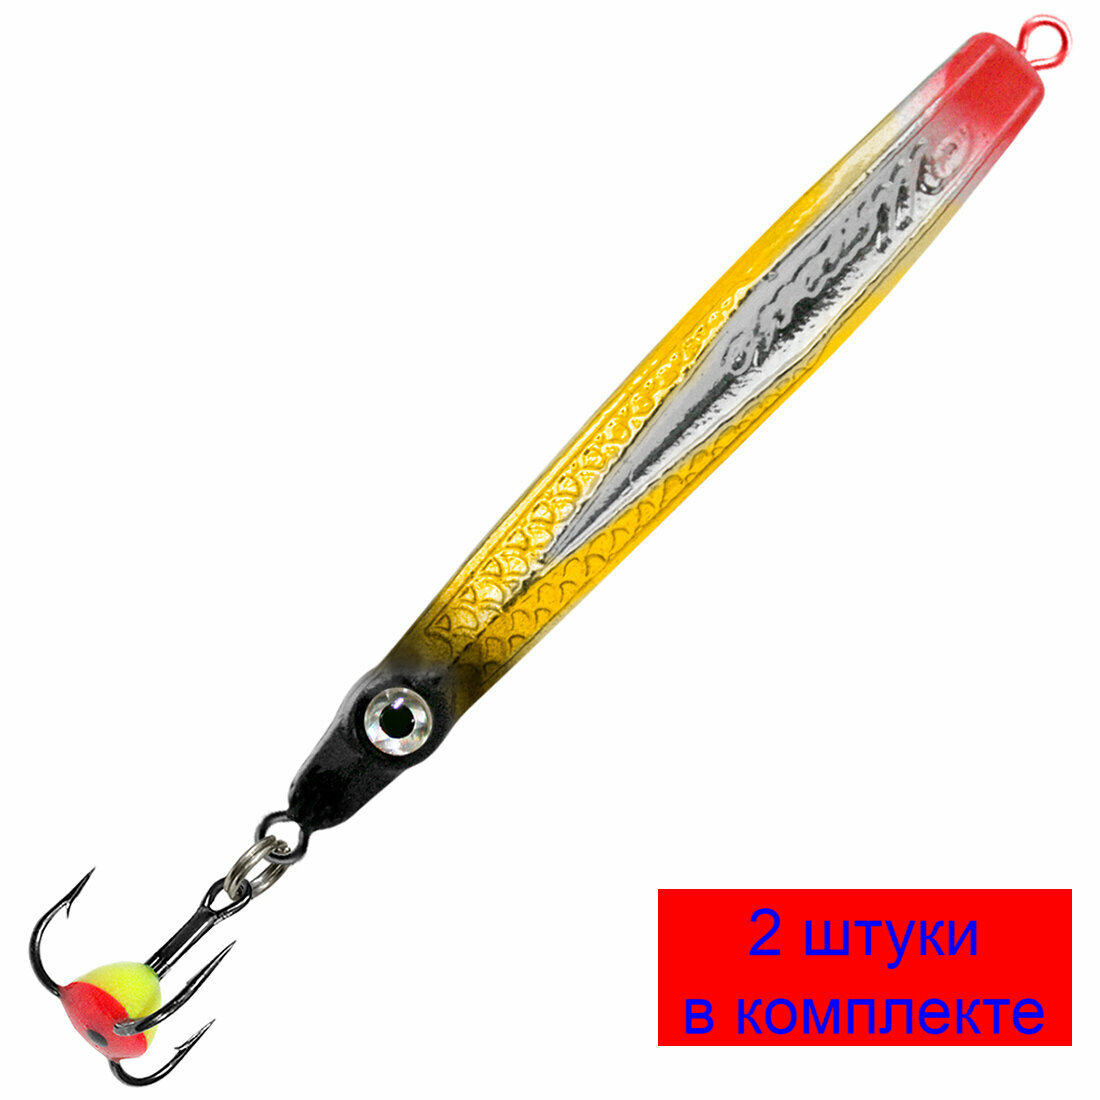 Блесна для рыбалки зимняя AQUA Штык 11,0g, цвет 05 (серебро, золото, черный металлик) 2 штуки в комплекте.